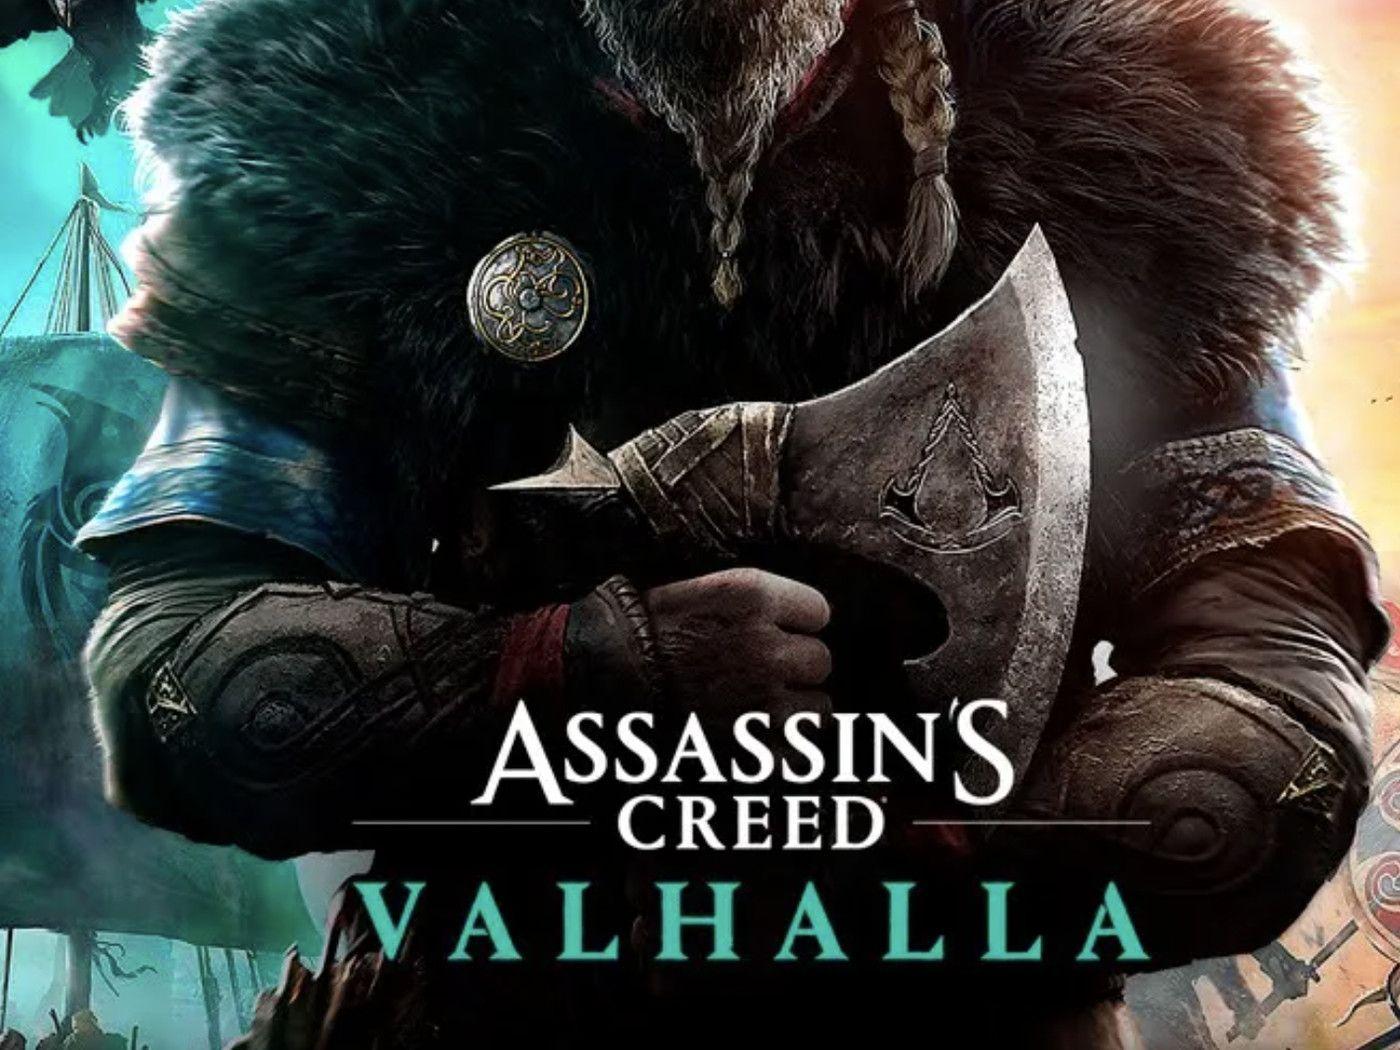 Eivor from Assassins Creed Valhalla Wallpaper 5k Ultra HD ID6532